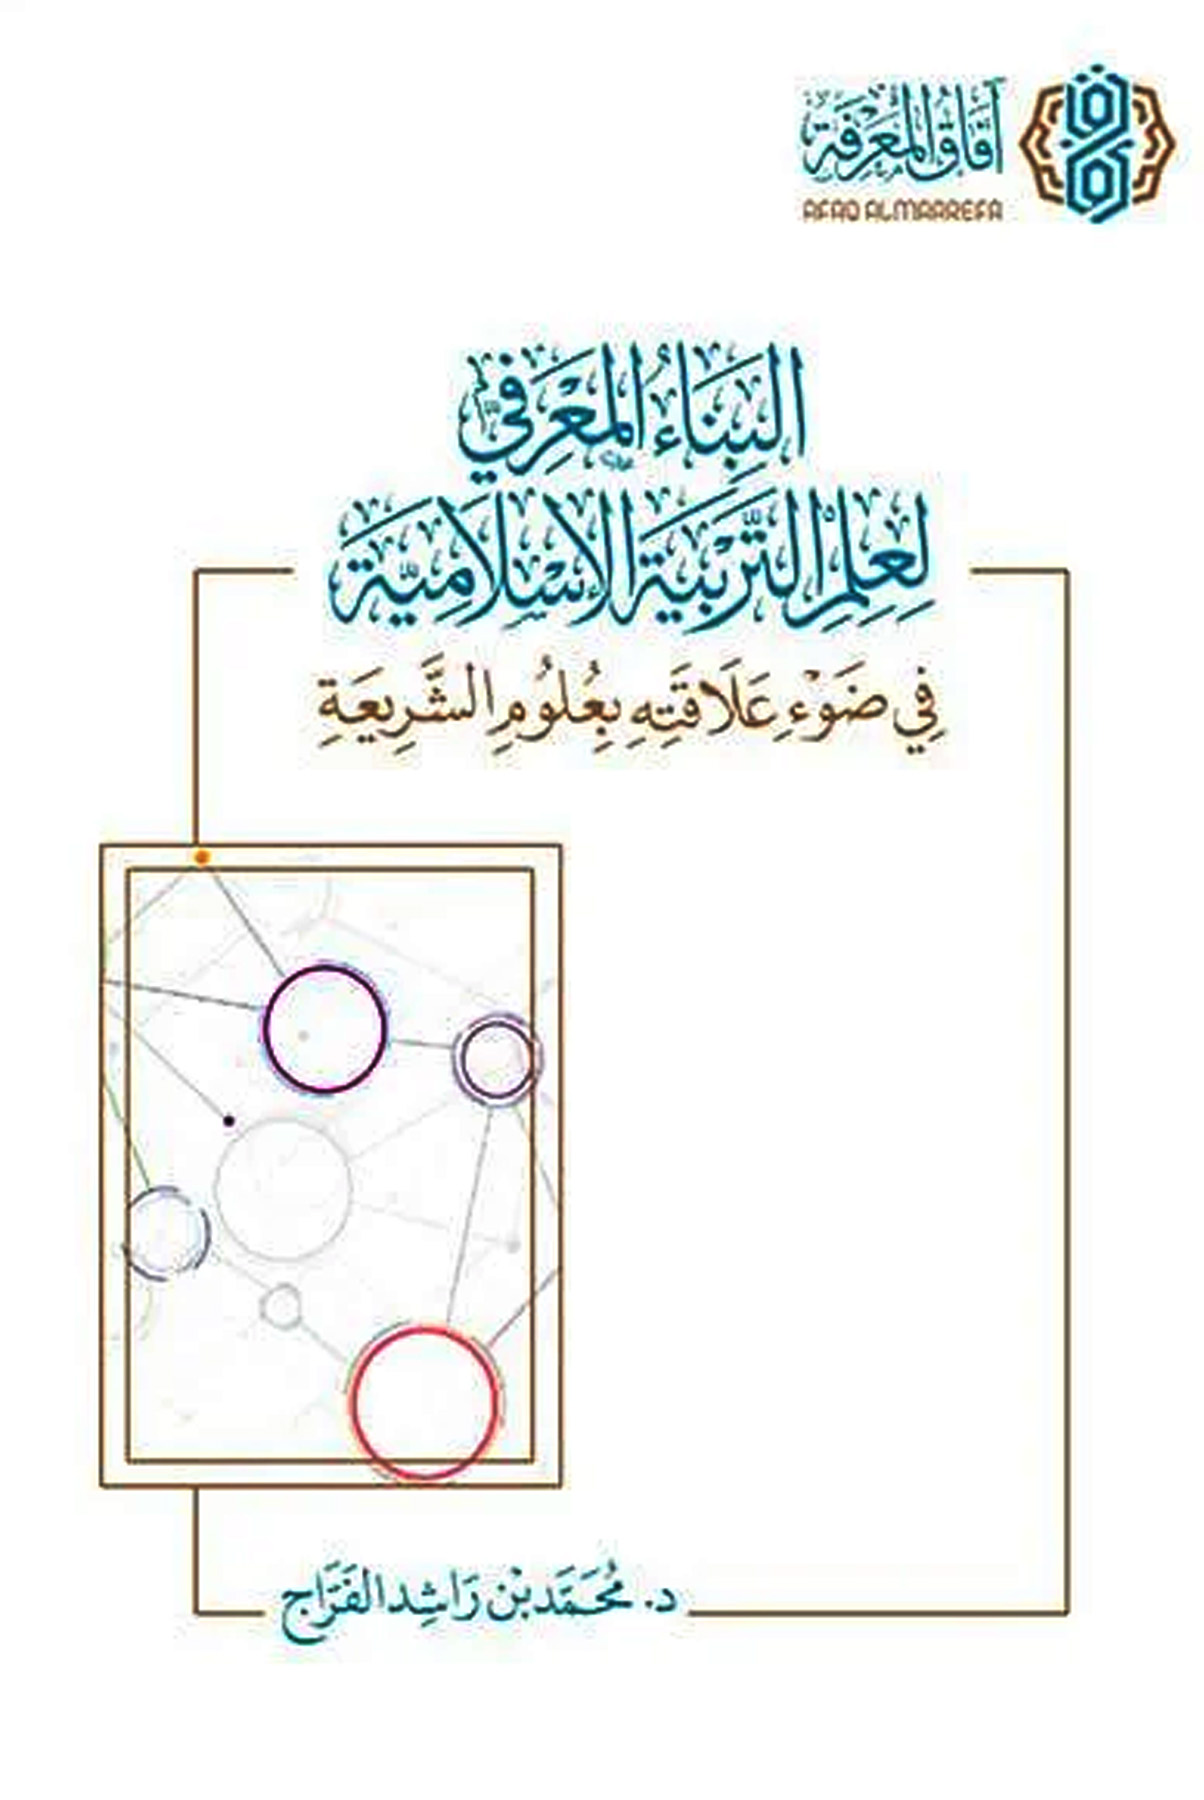 البناء المعرفي لعلم التربية الإسلامية في ضوء علاقته بعلوم الشريعة